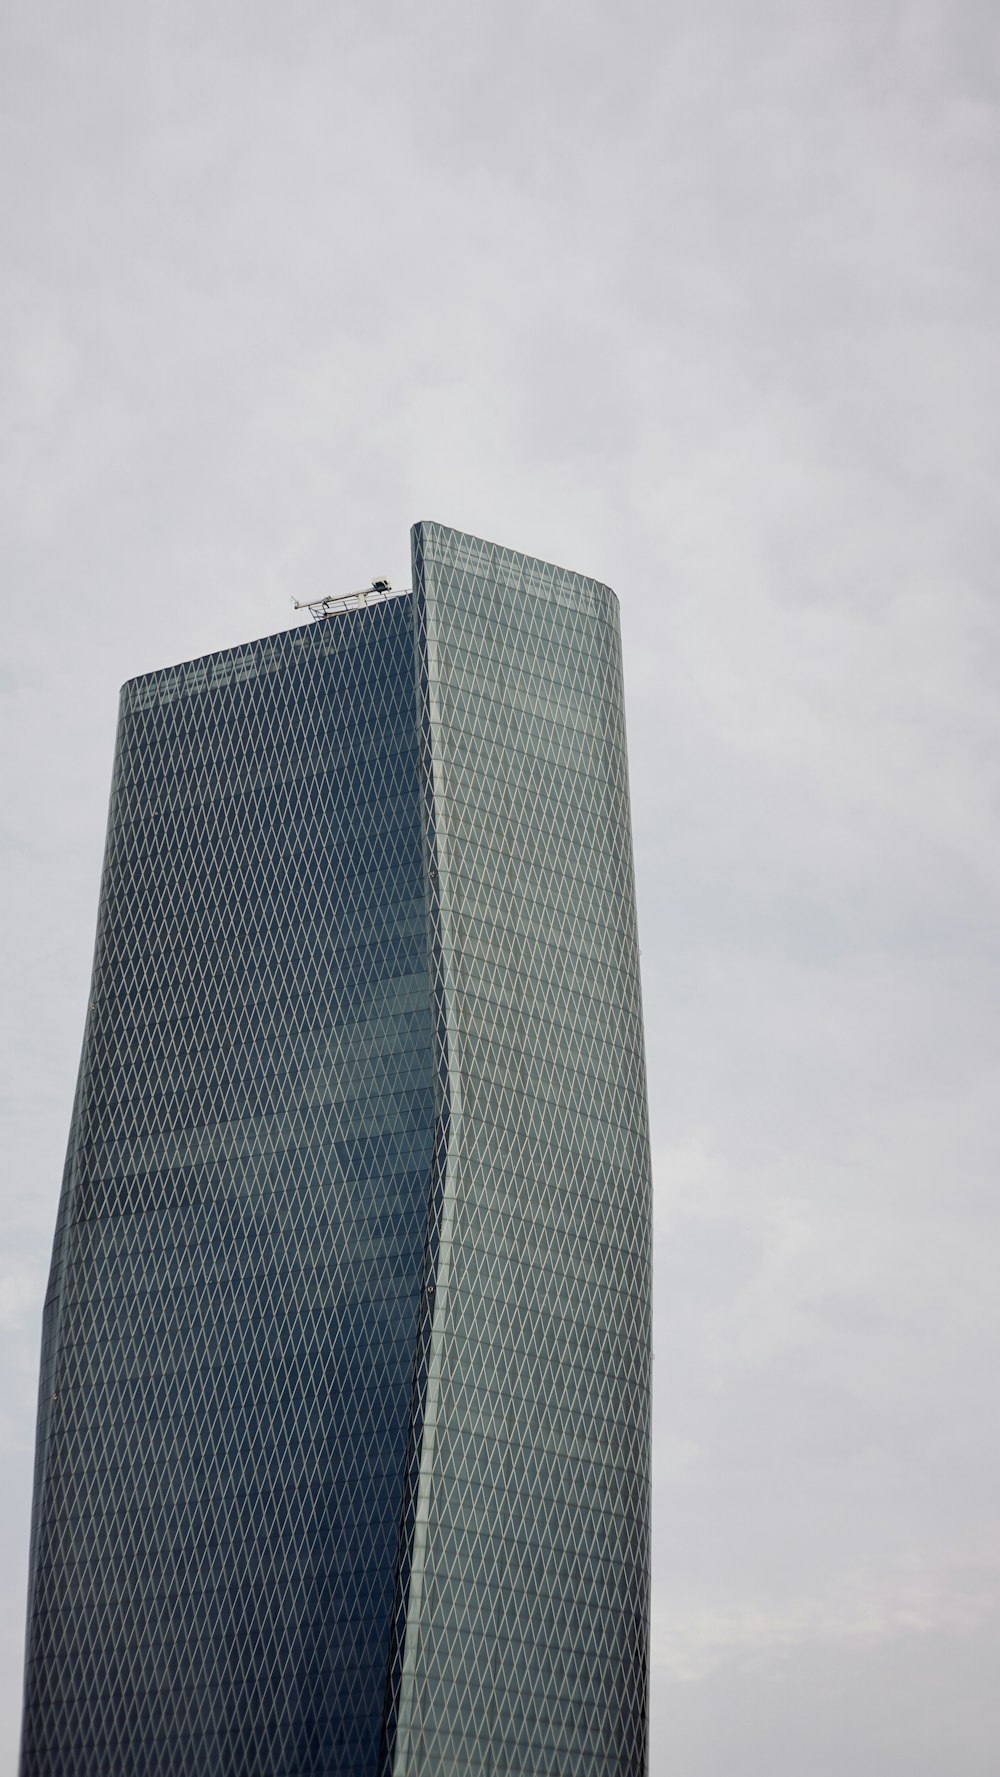 Un edificio alto con un fondo de cielo